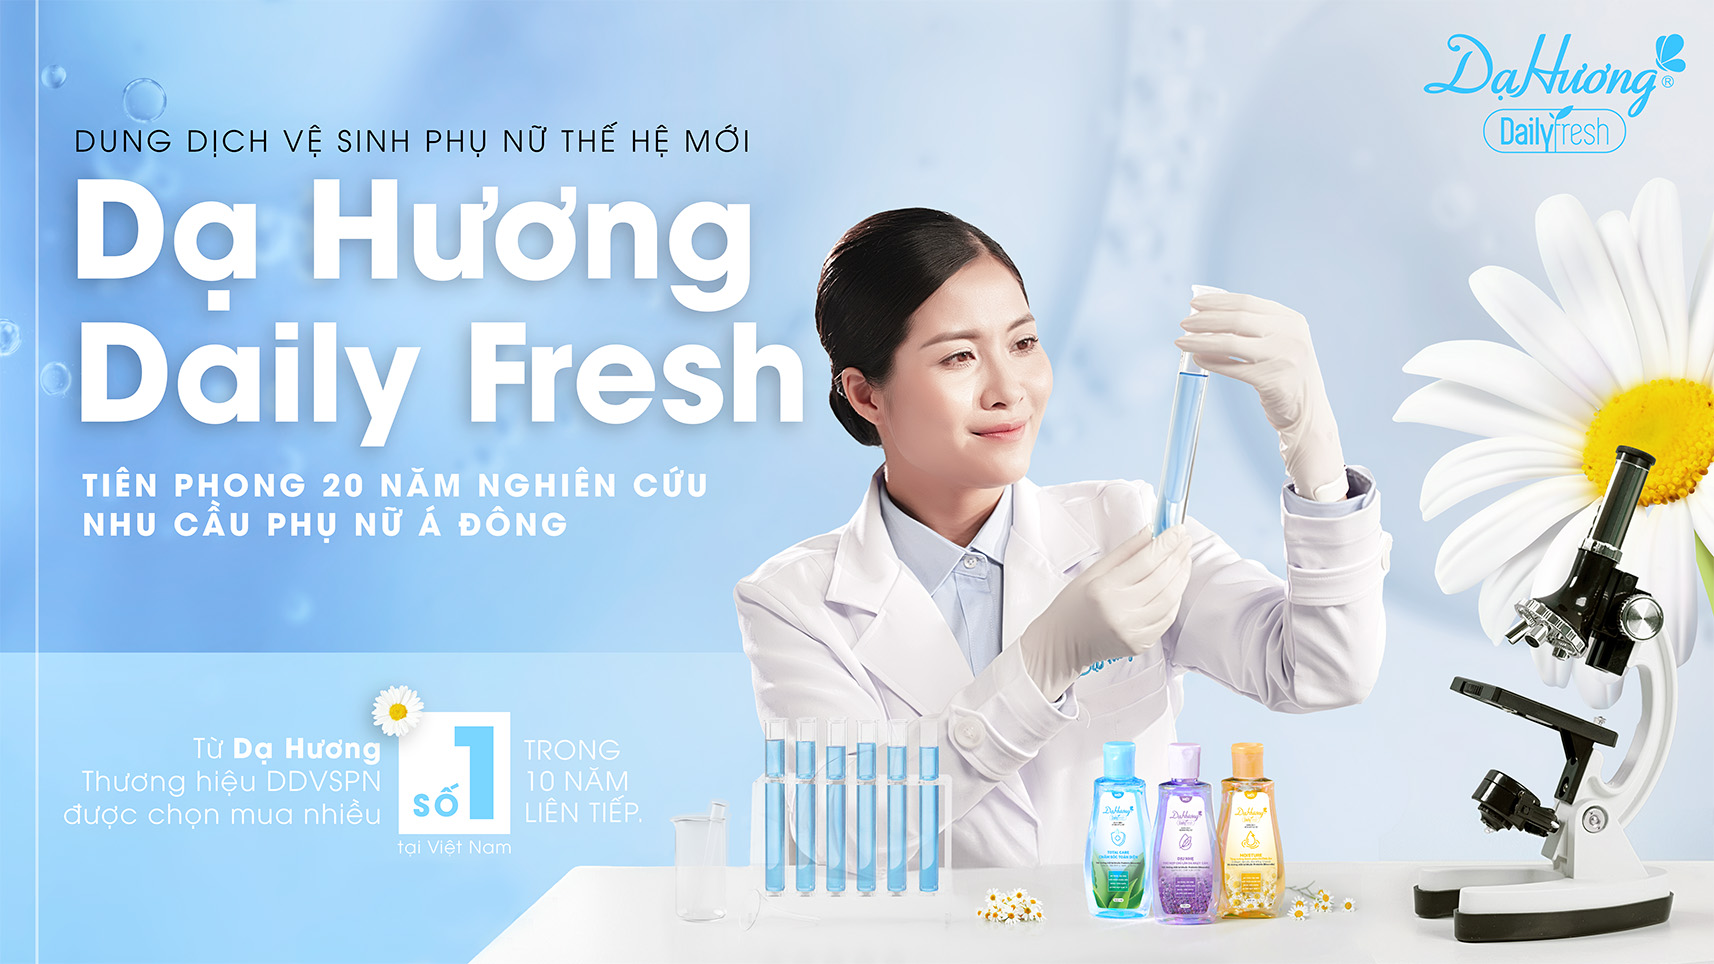 Cô gái ngồi cầm ống nghiệp - Dạ Hương Daily Fresh